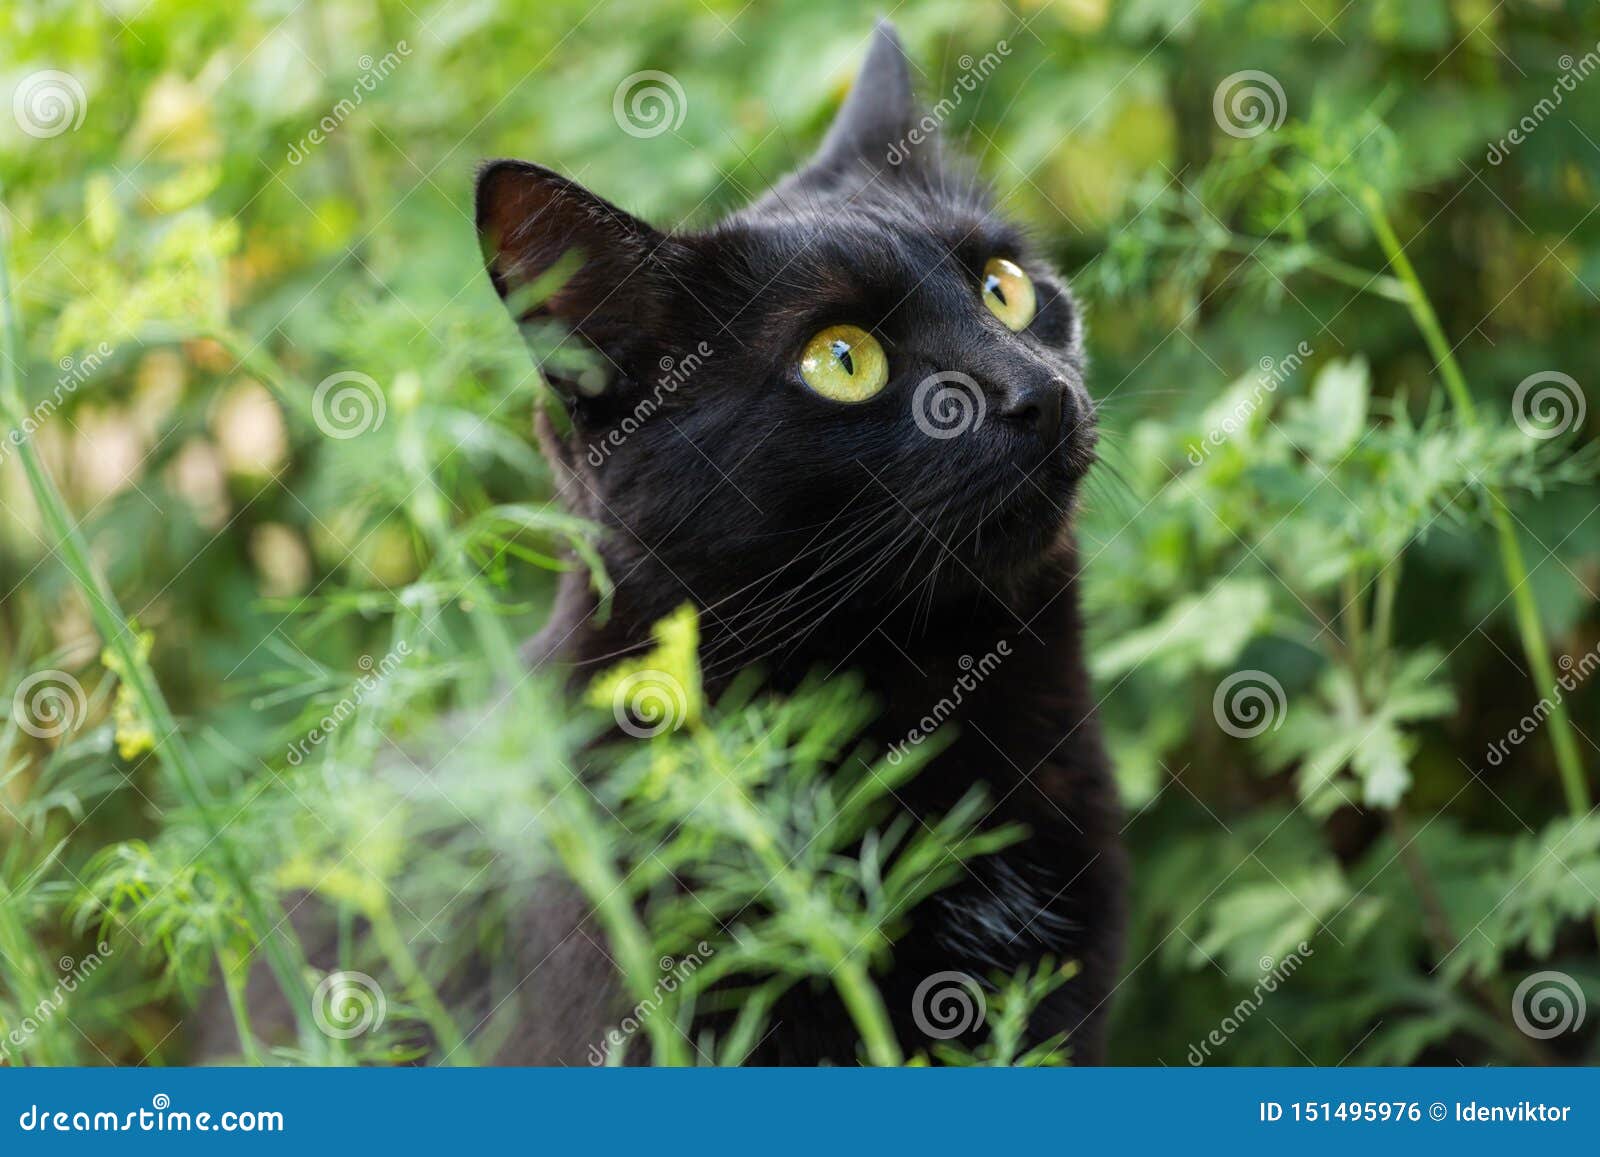 Черный милый конец портрета кота bombay вверх, макрос. Черный милый портрет кота bombay с большими желтыми глазами и концом взгляда проницательности вверх, макрос